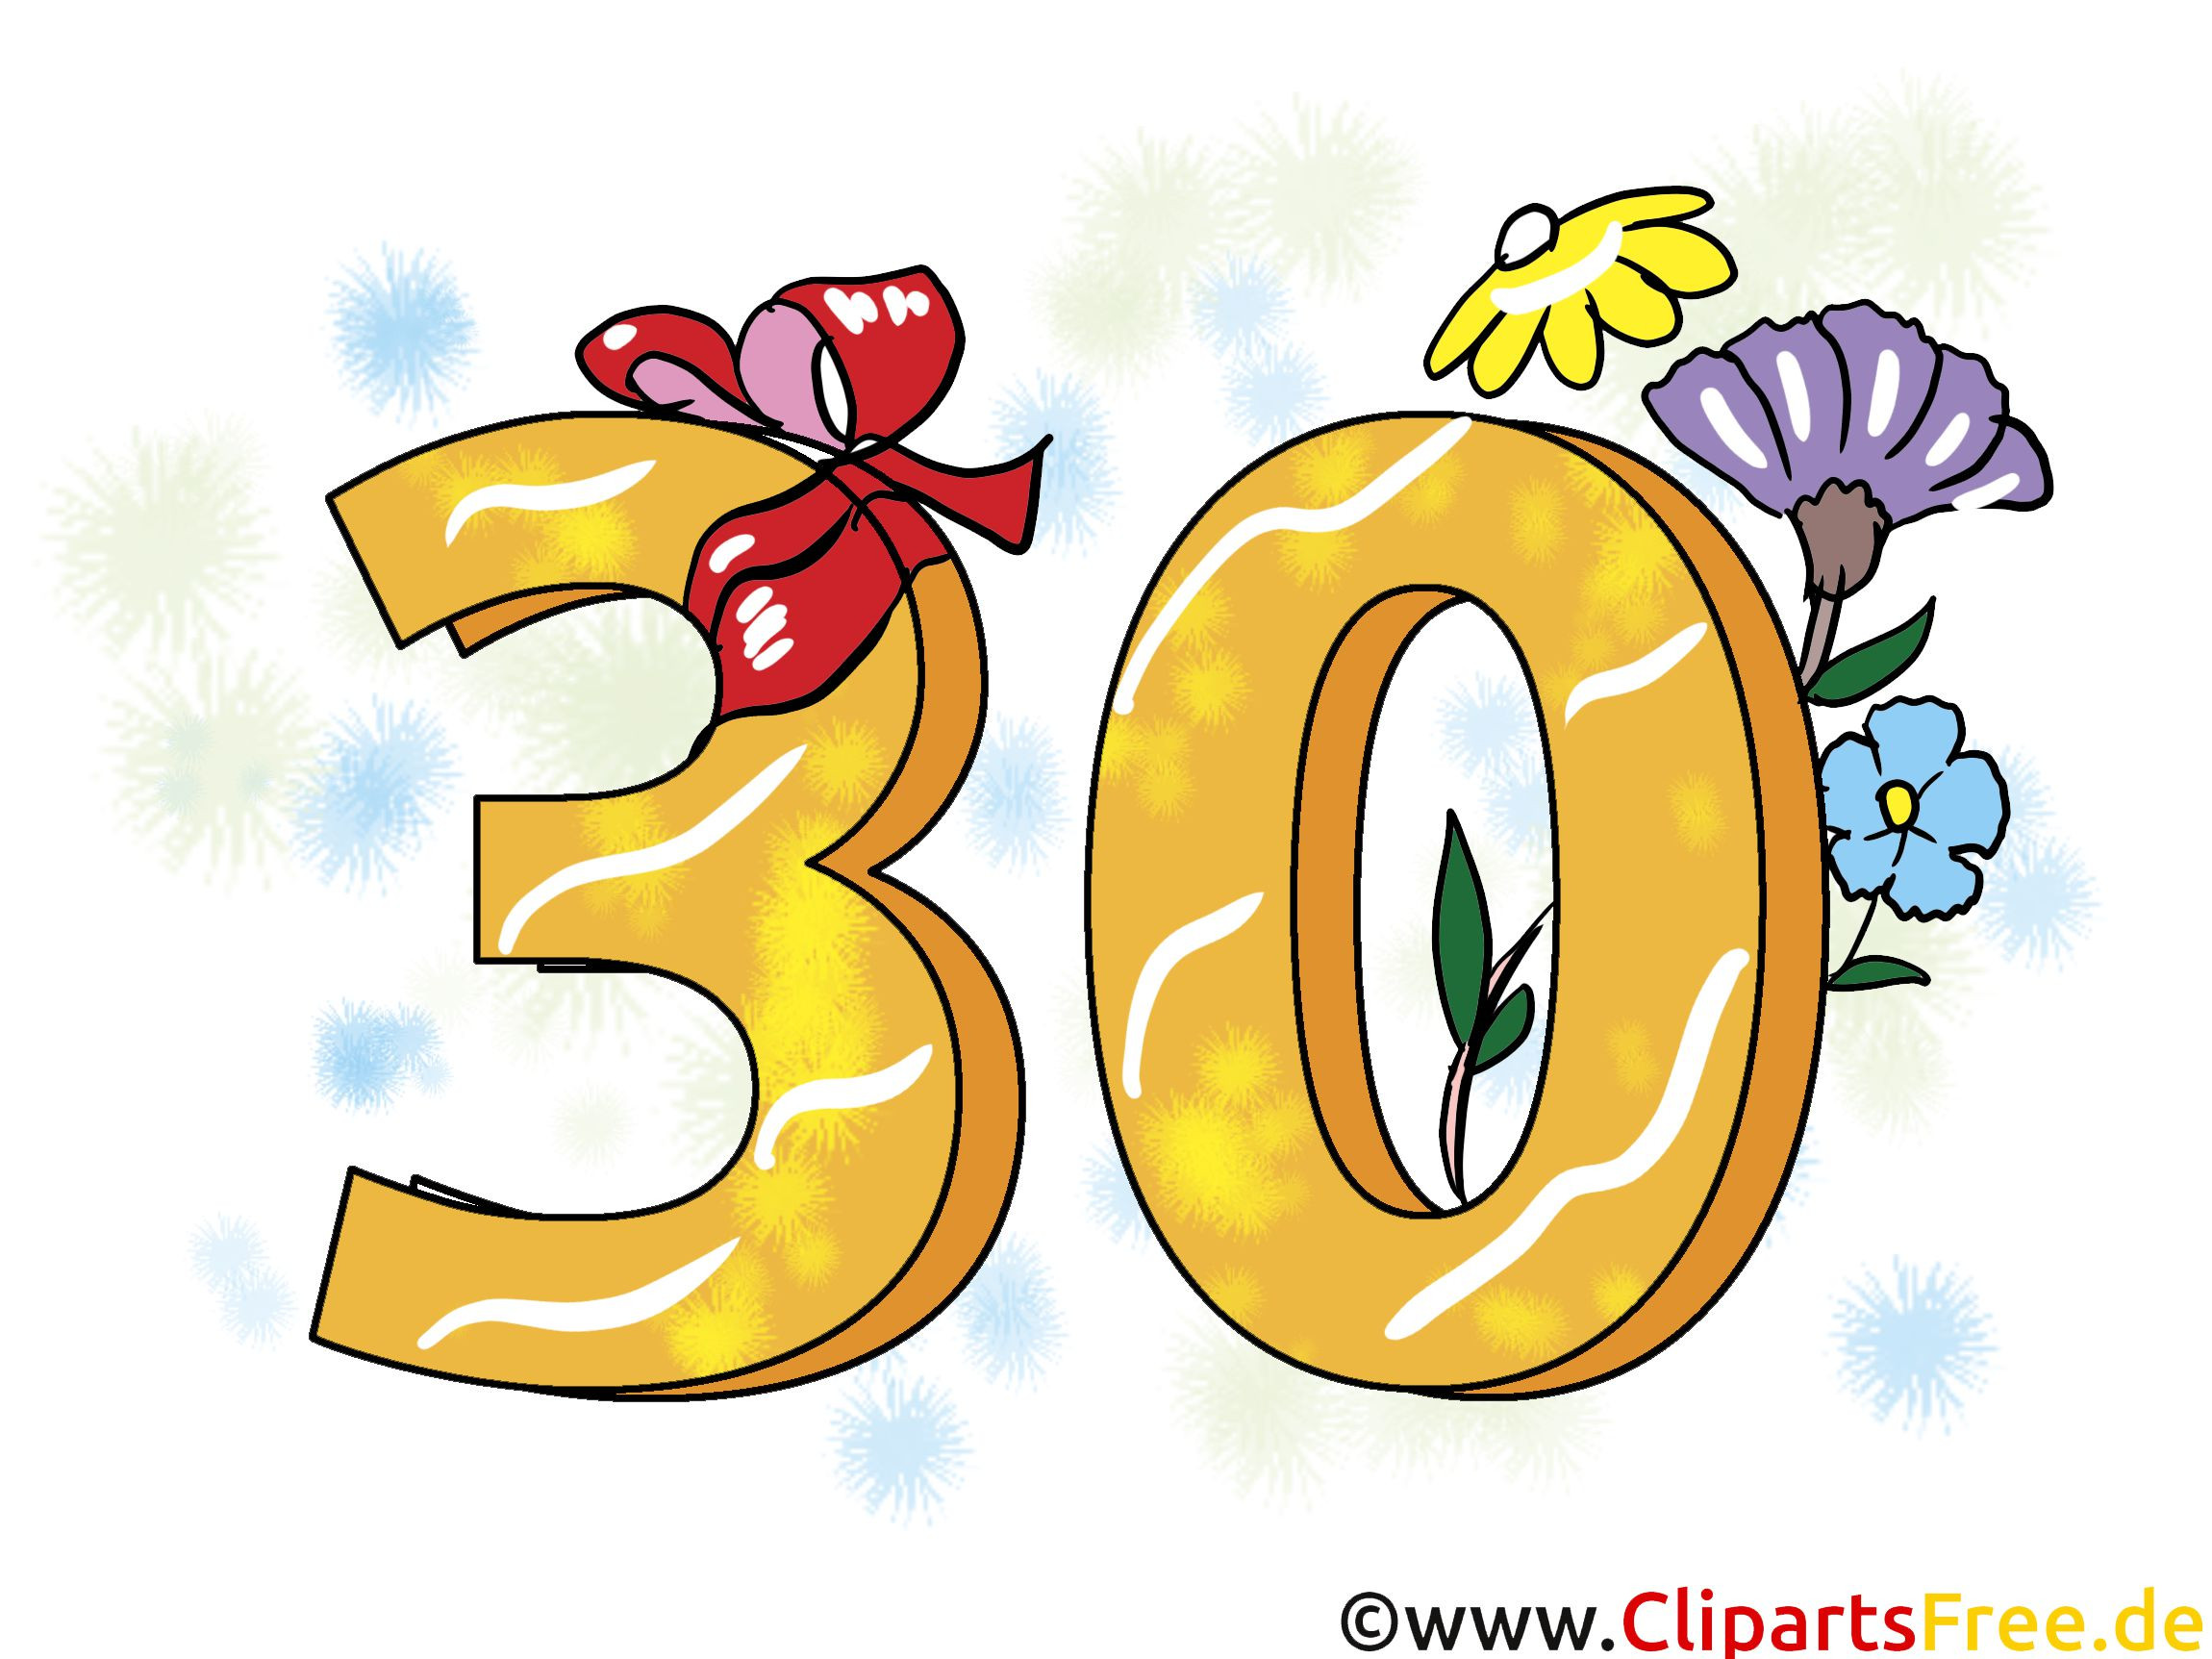 Geburtstagswünsche Zum 30 Geburtstag
 Einladungskarten Zum 30 Geburtstag Ausdrucken